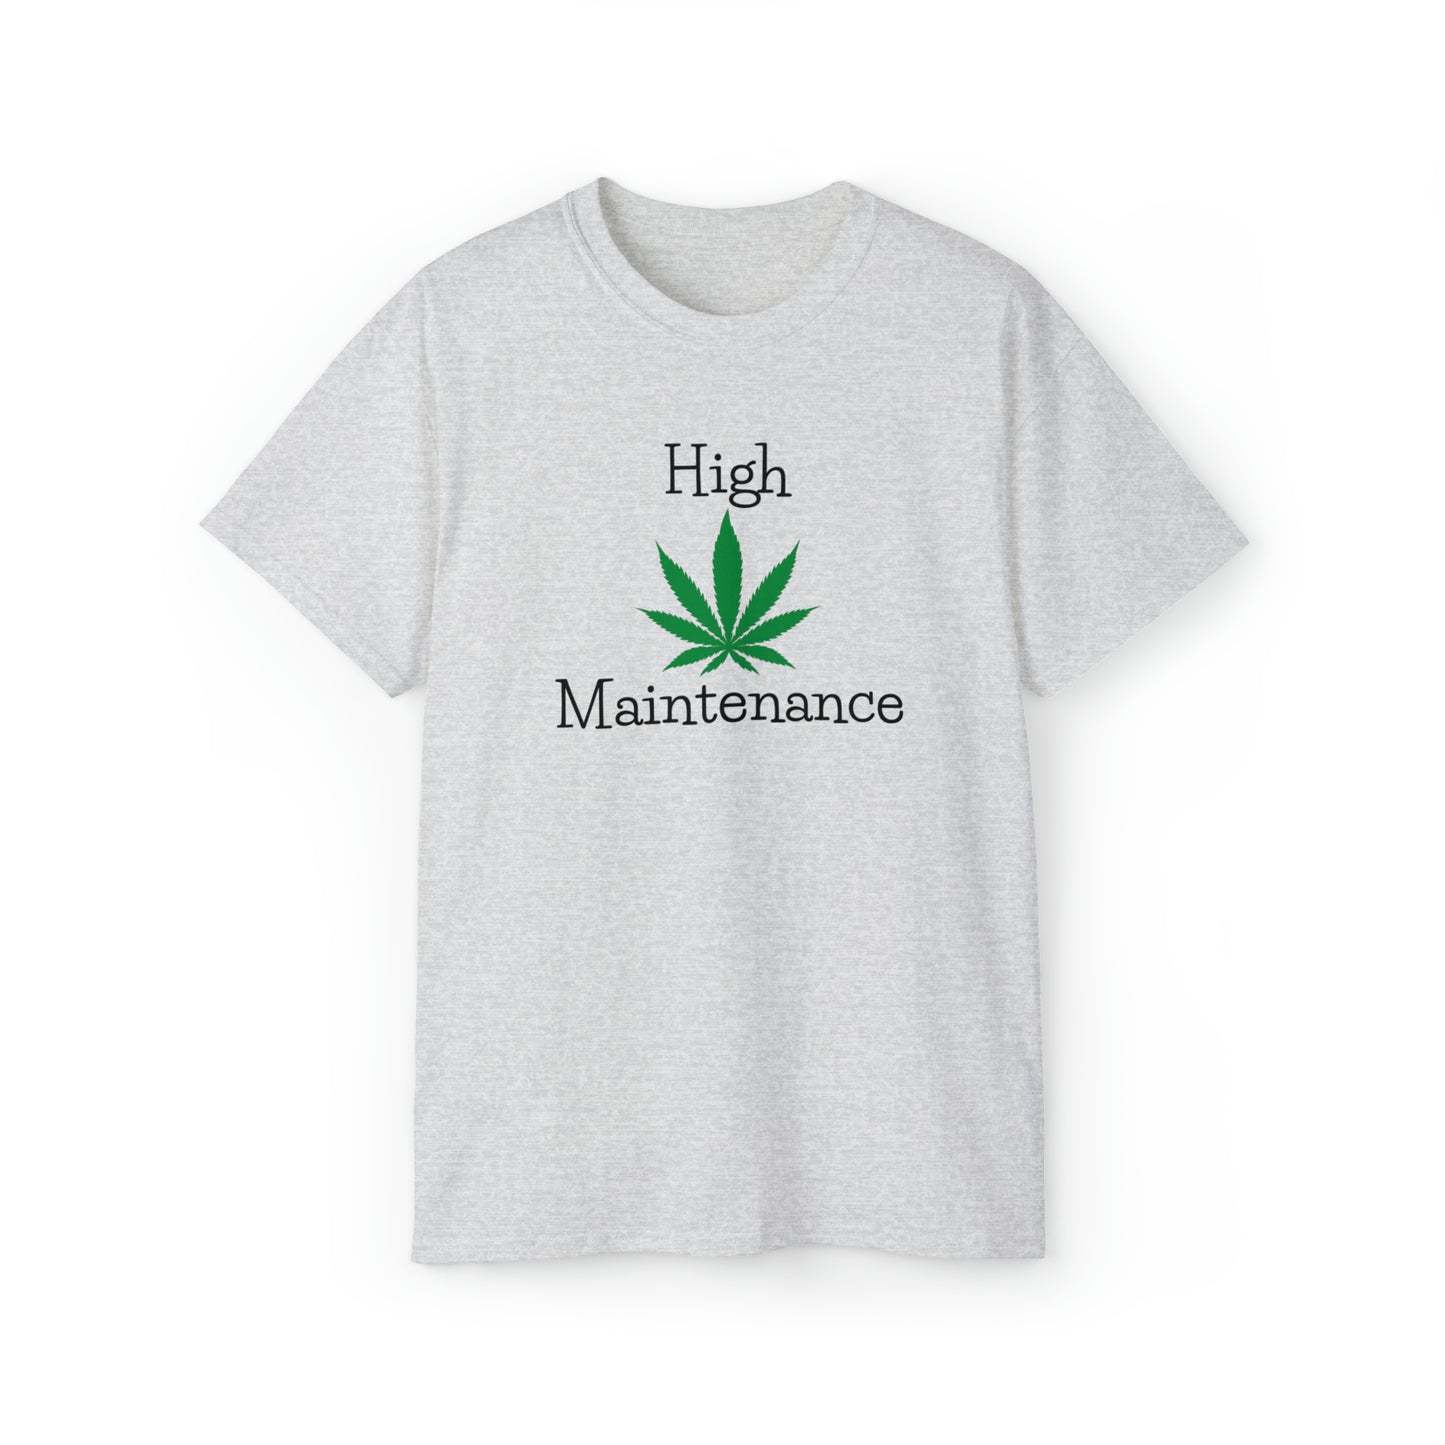 High Maintenance Cannabis Tee